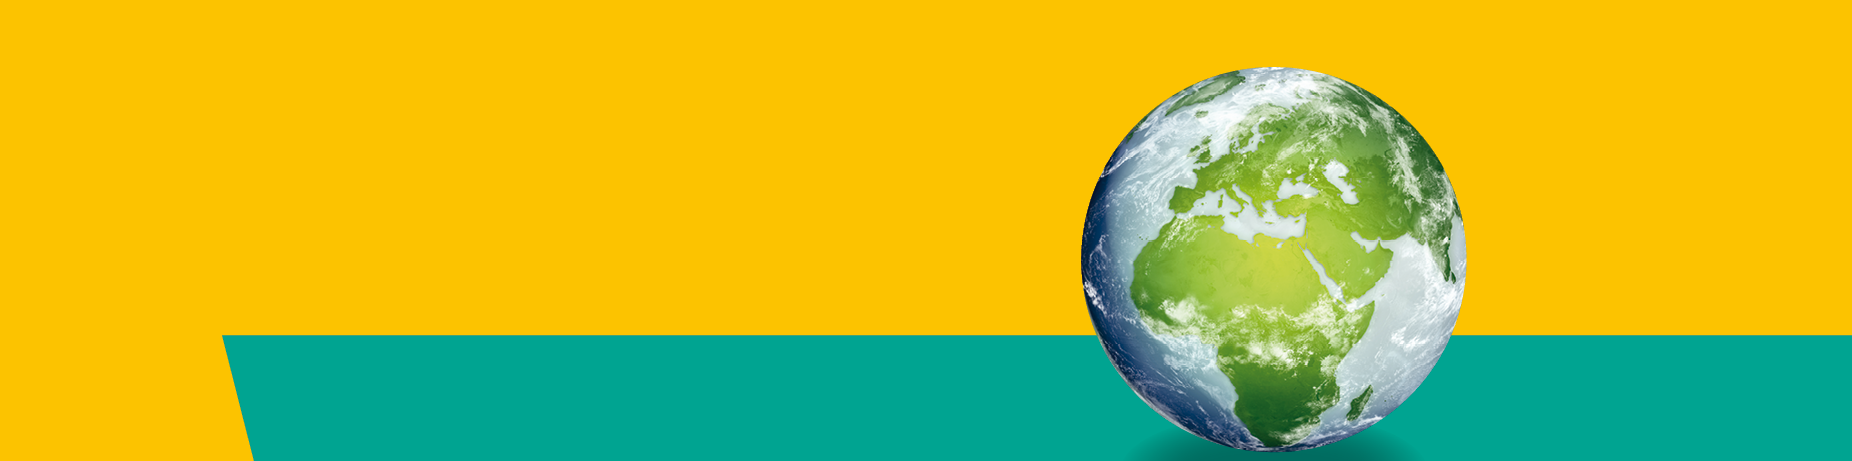 Weltkugel vor gelb-grünem Hintergrund